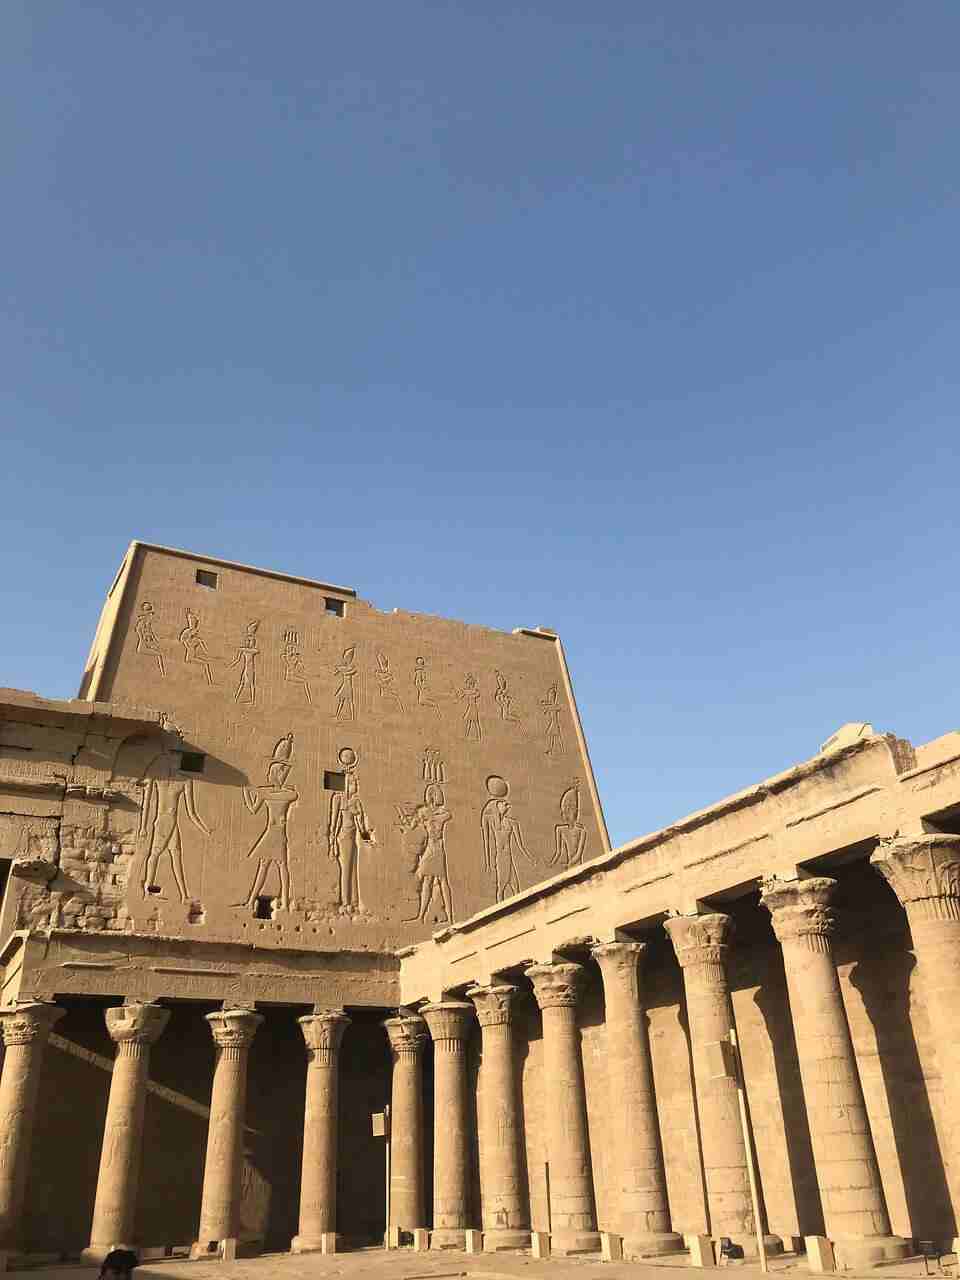 Las Pirámides de Guiza la esfinge y los templos del Nilo en Semana Santa